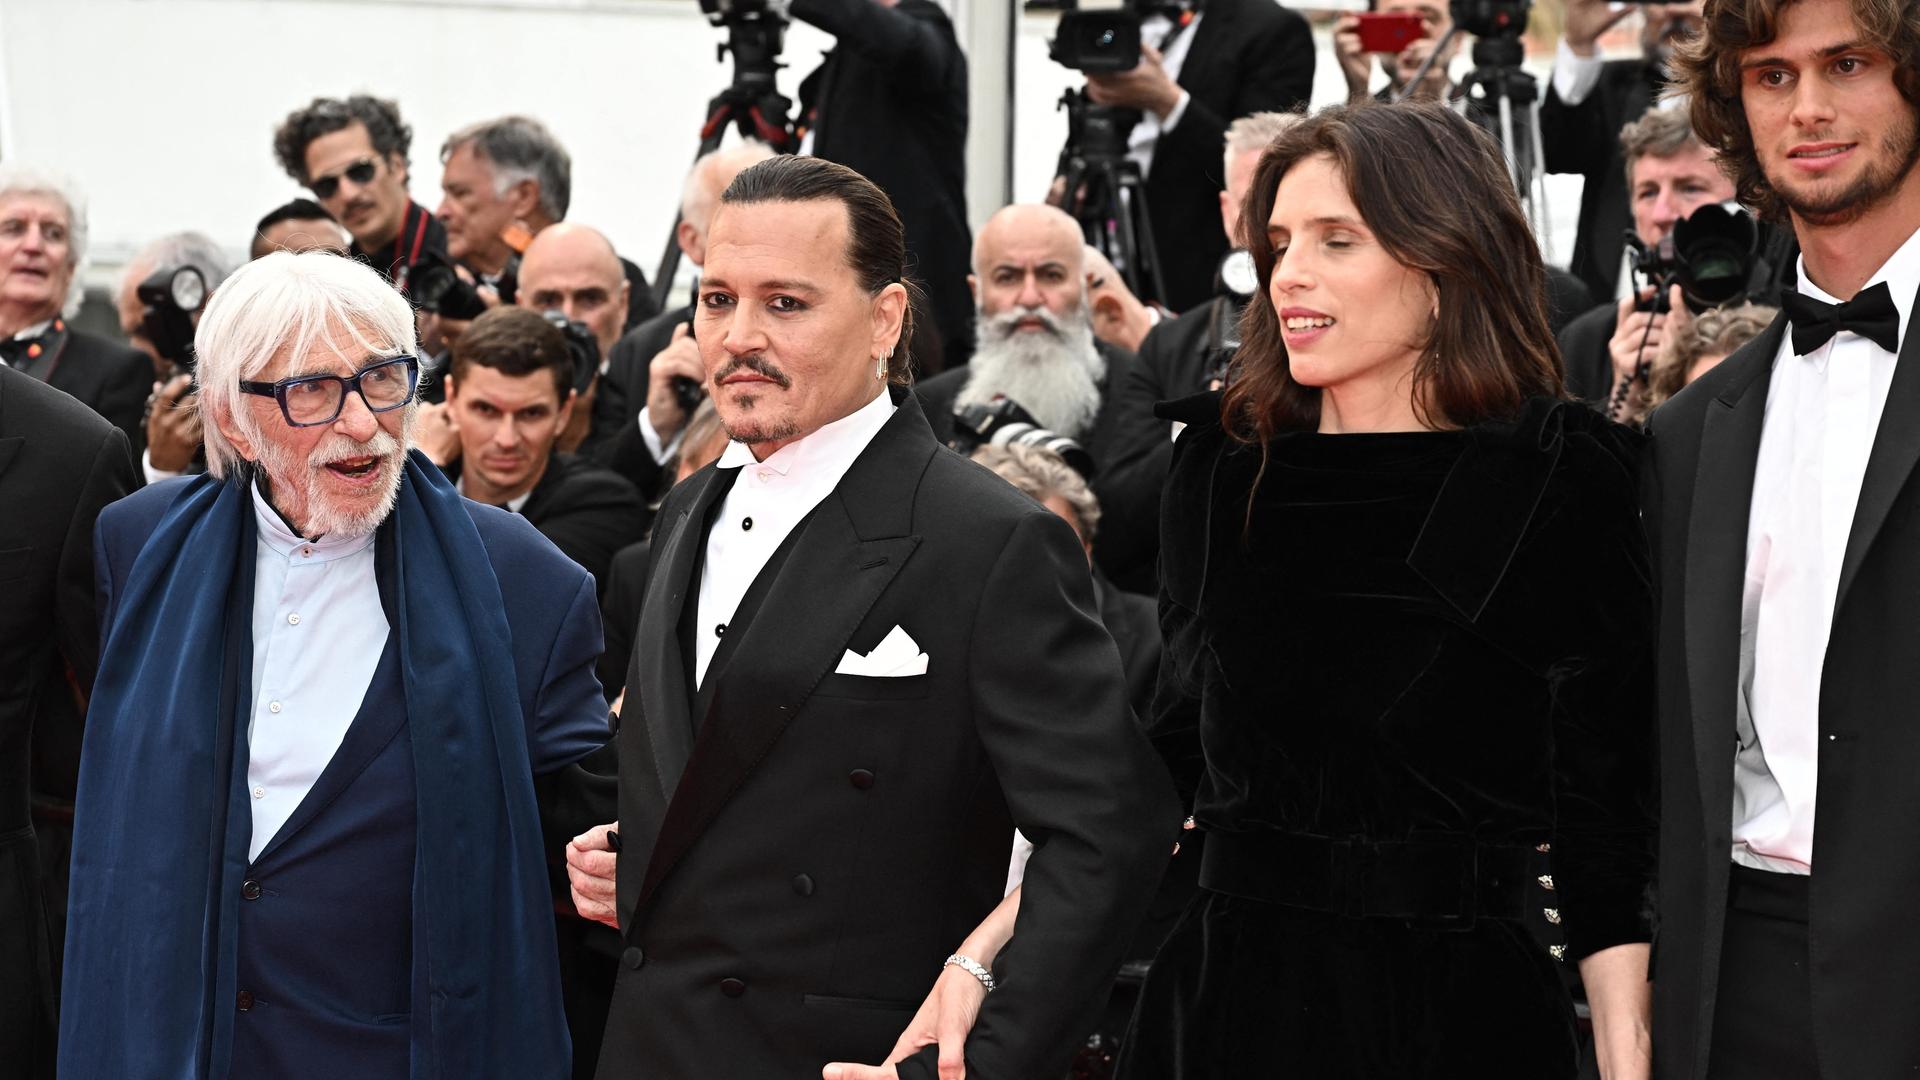 Pierre Richard, Johnny Deep, Maïwenn, Diego Le Fur bei der Premiere von "Jeanne du Barry" in Cannes.